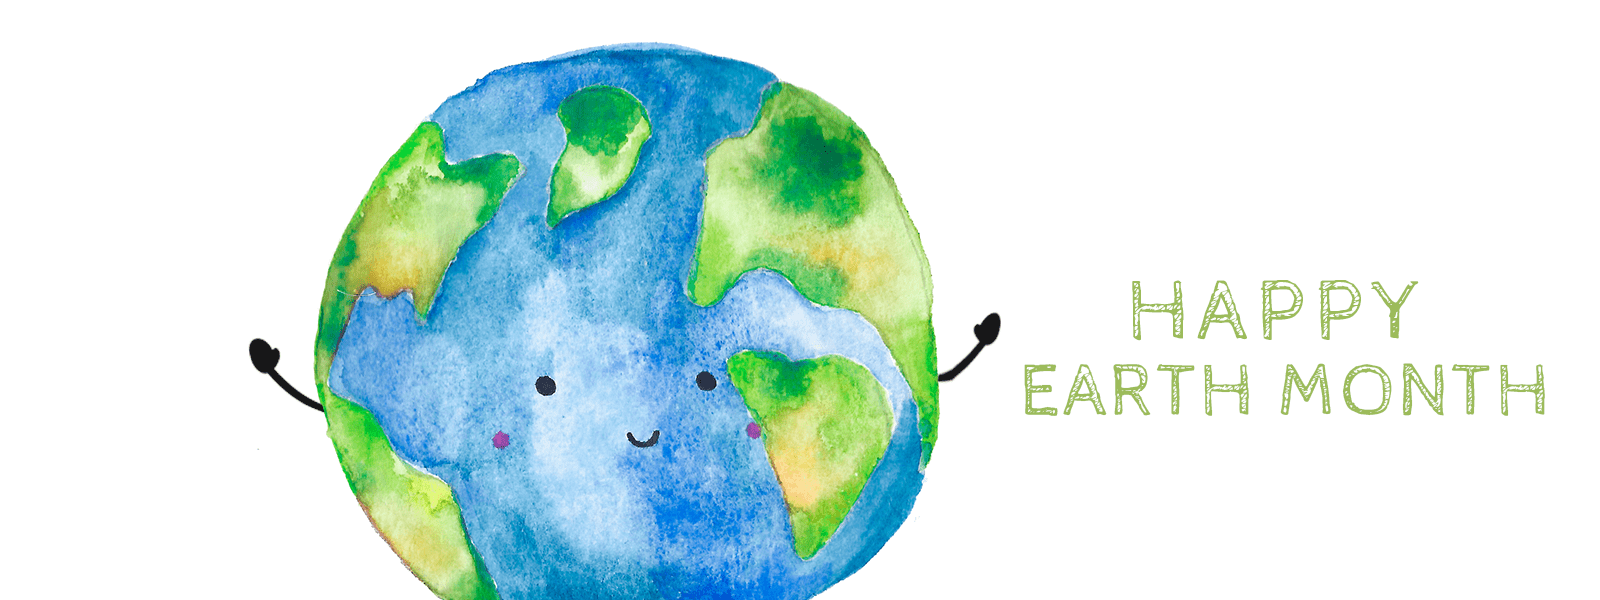 Freebie: Earth Month Wallpaper